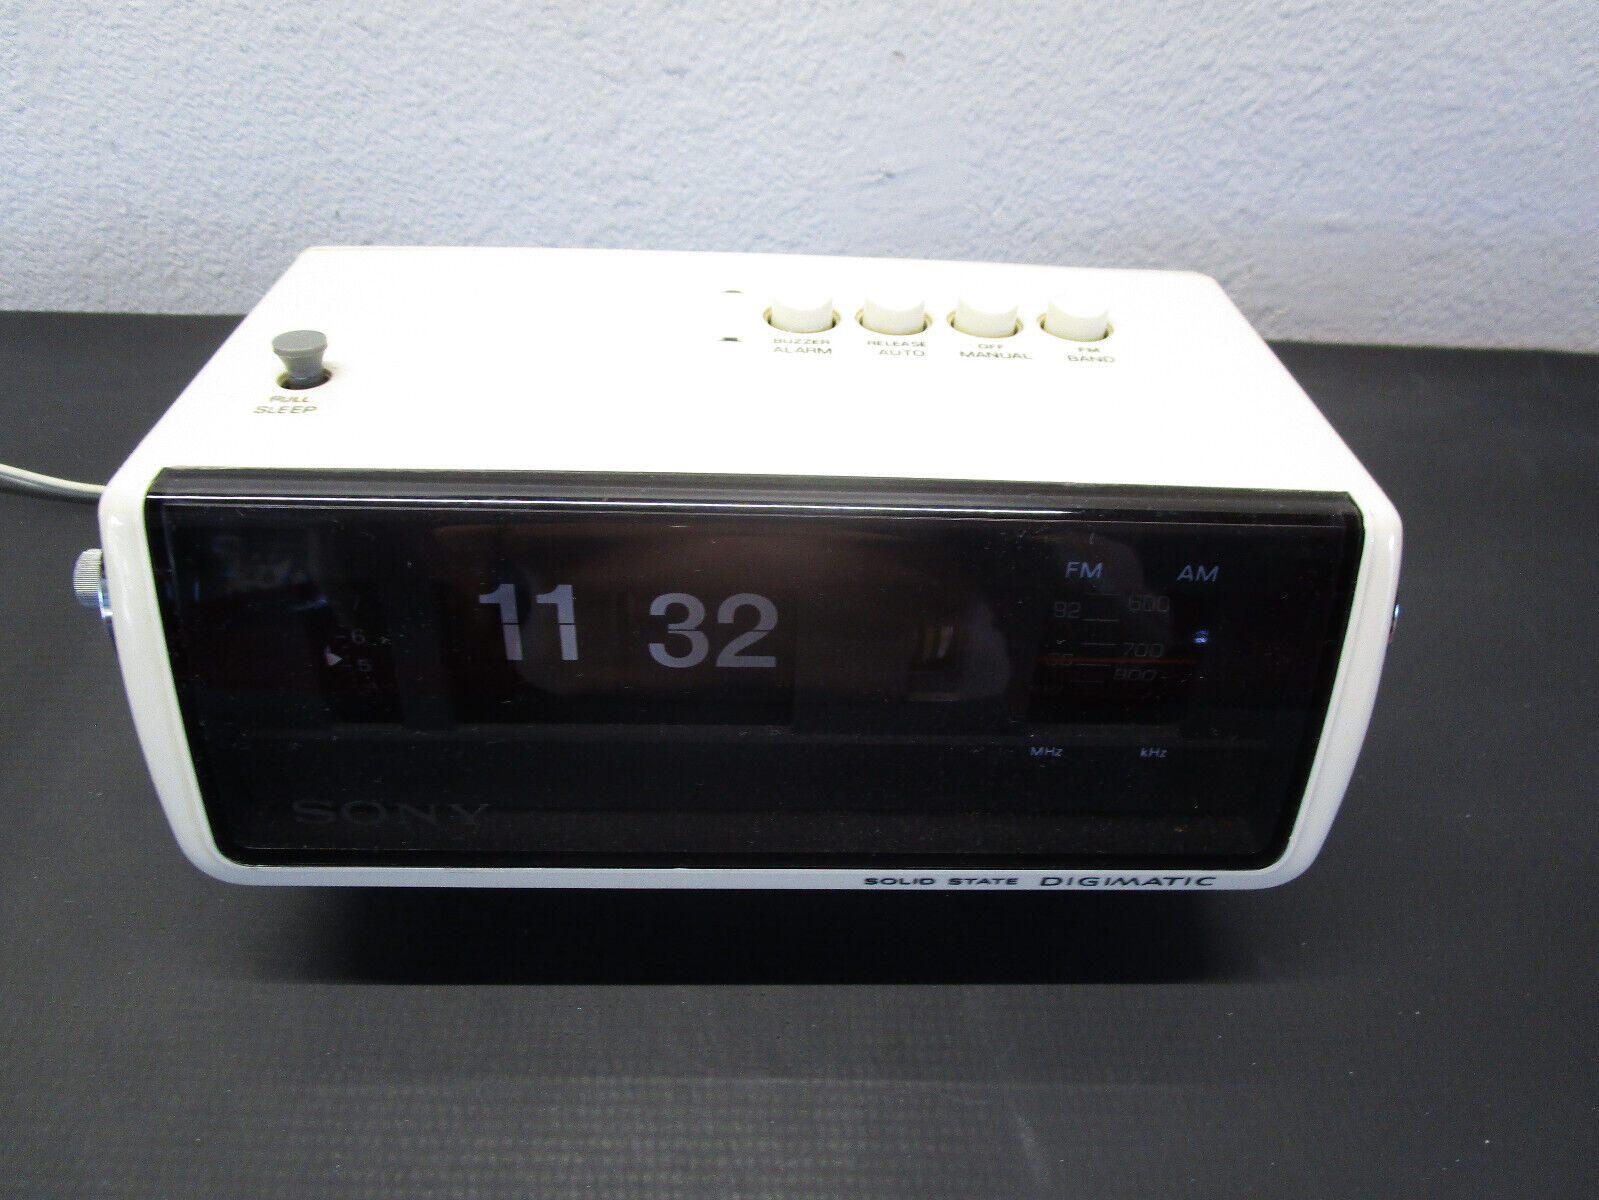 NICE Vtg Mod 80s Sony Solid State Digimatic AM FM Radio Flip Clock 8FC-100W WORK